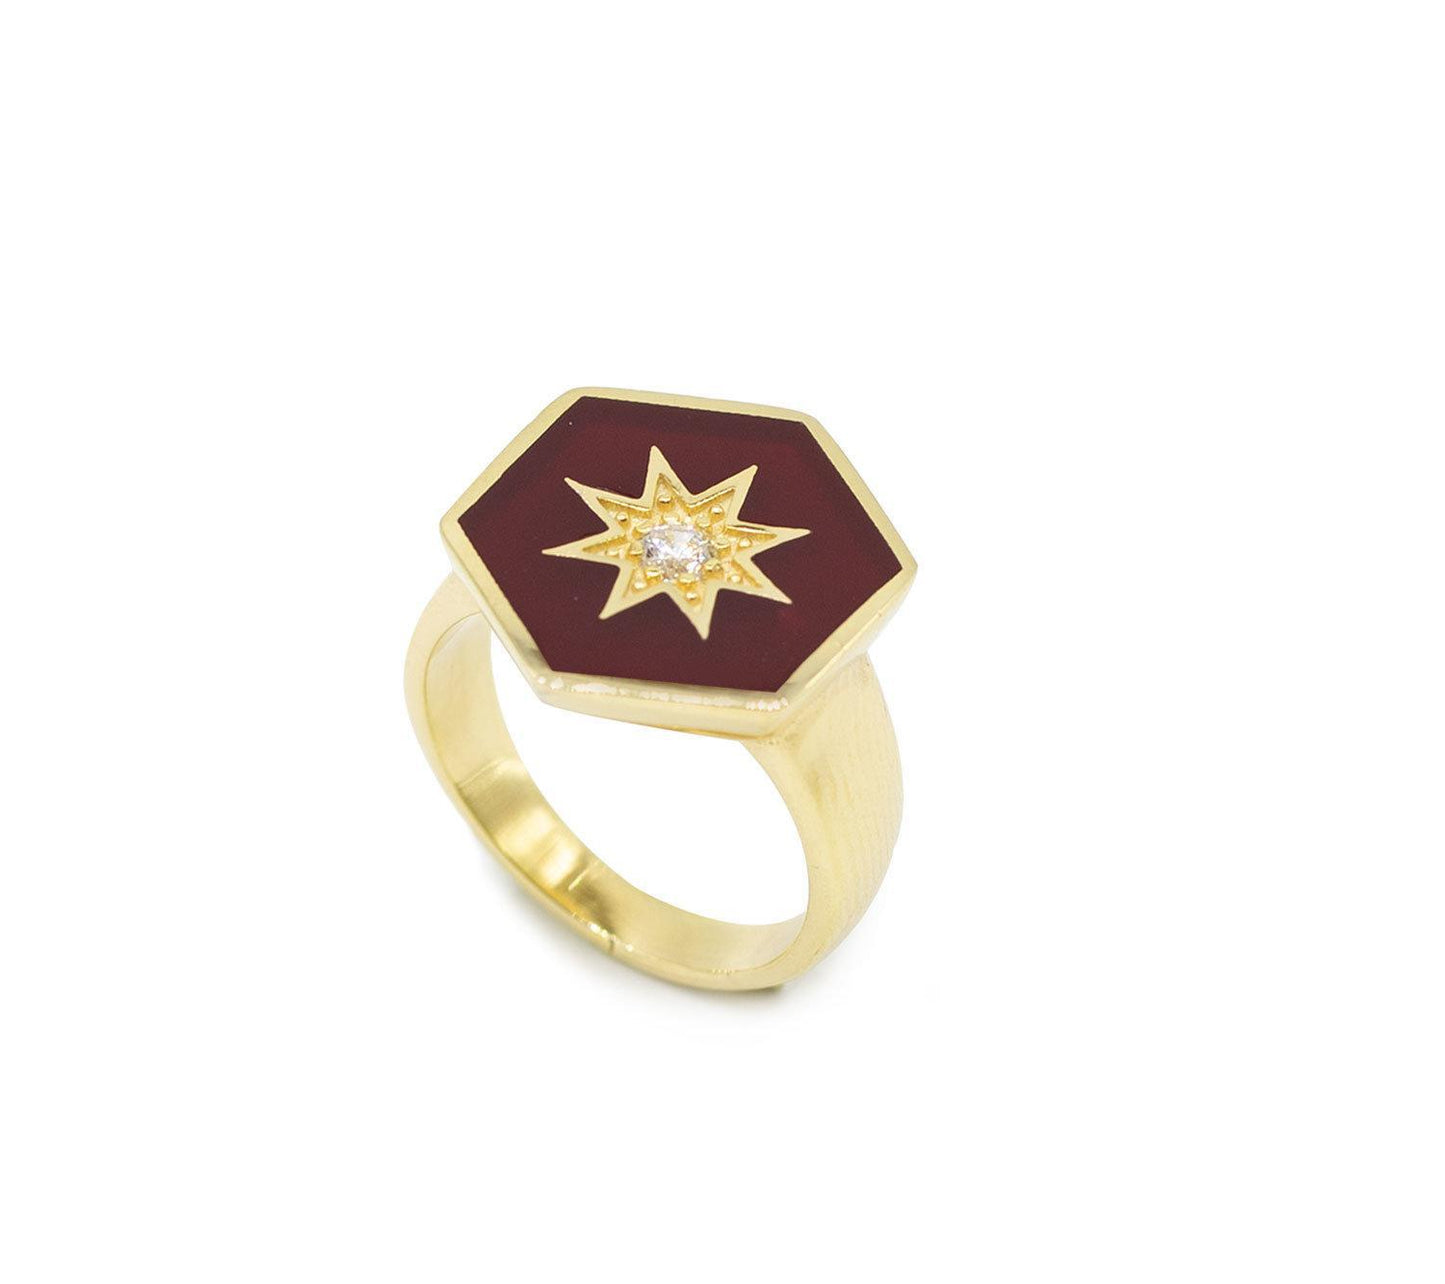 Burgundy Enamelled Hexagonal Ring